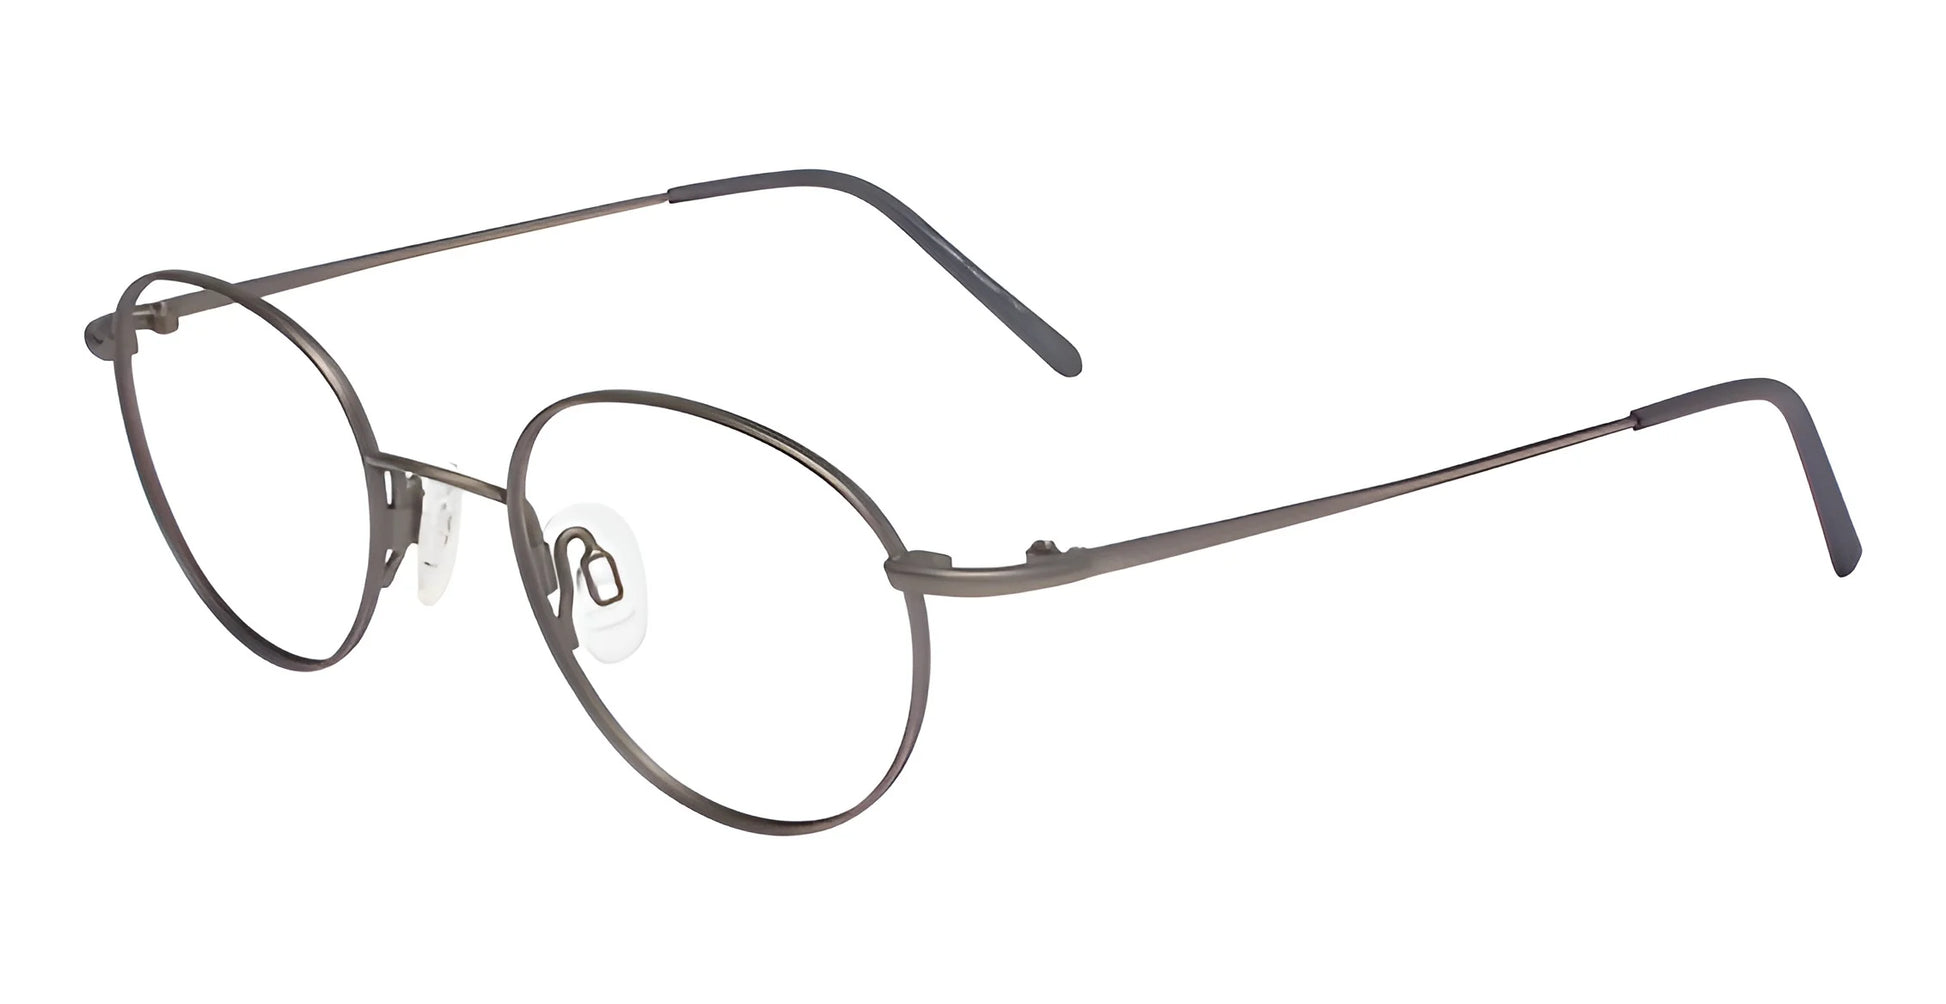 Flexon 623 Eyeglasses Charcoal